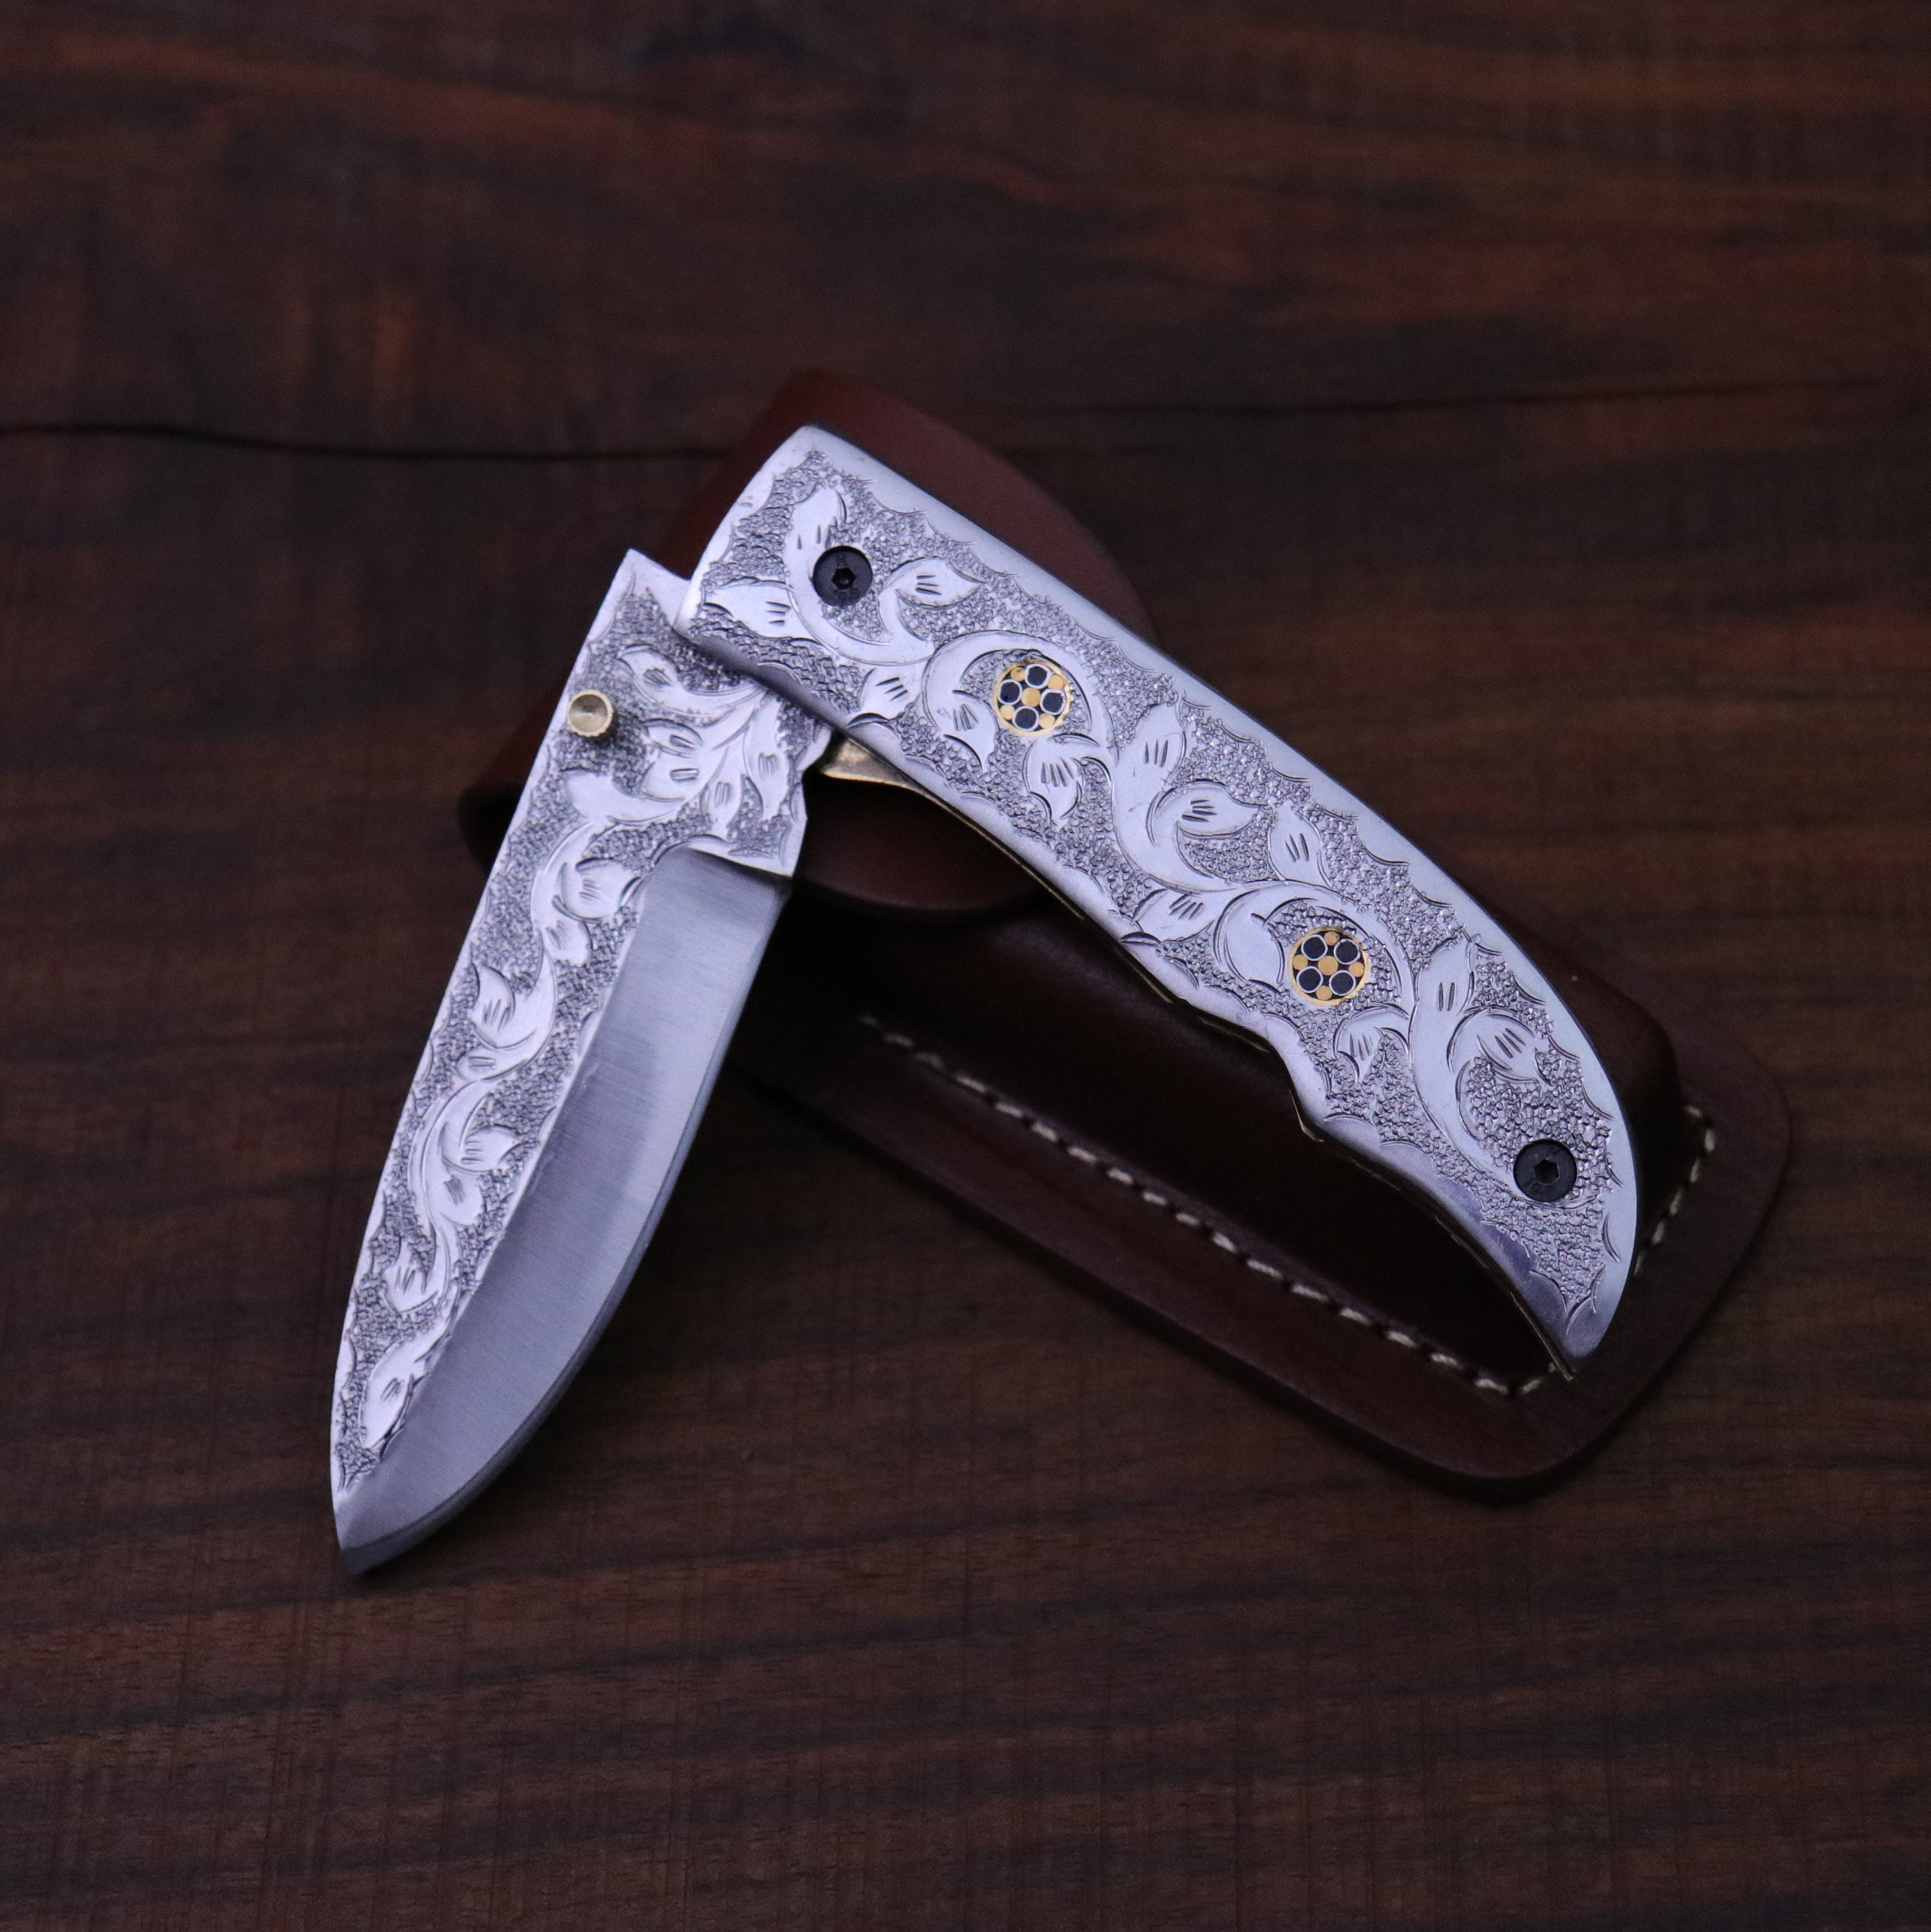 Damascus Steel Fillet Fishing Knife Gift for Men Groomsmen 